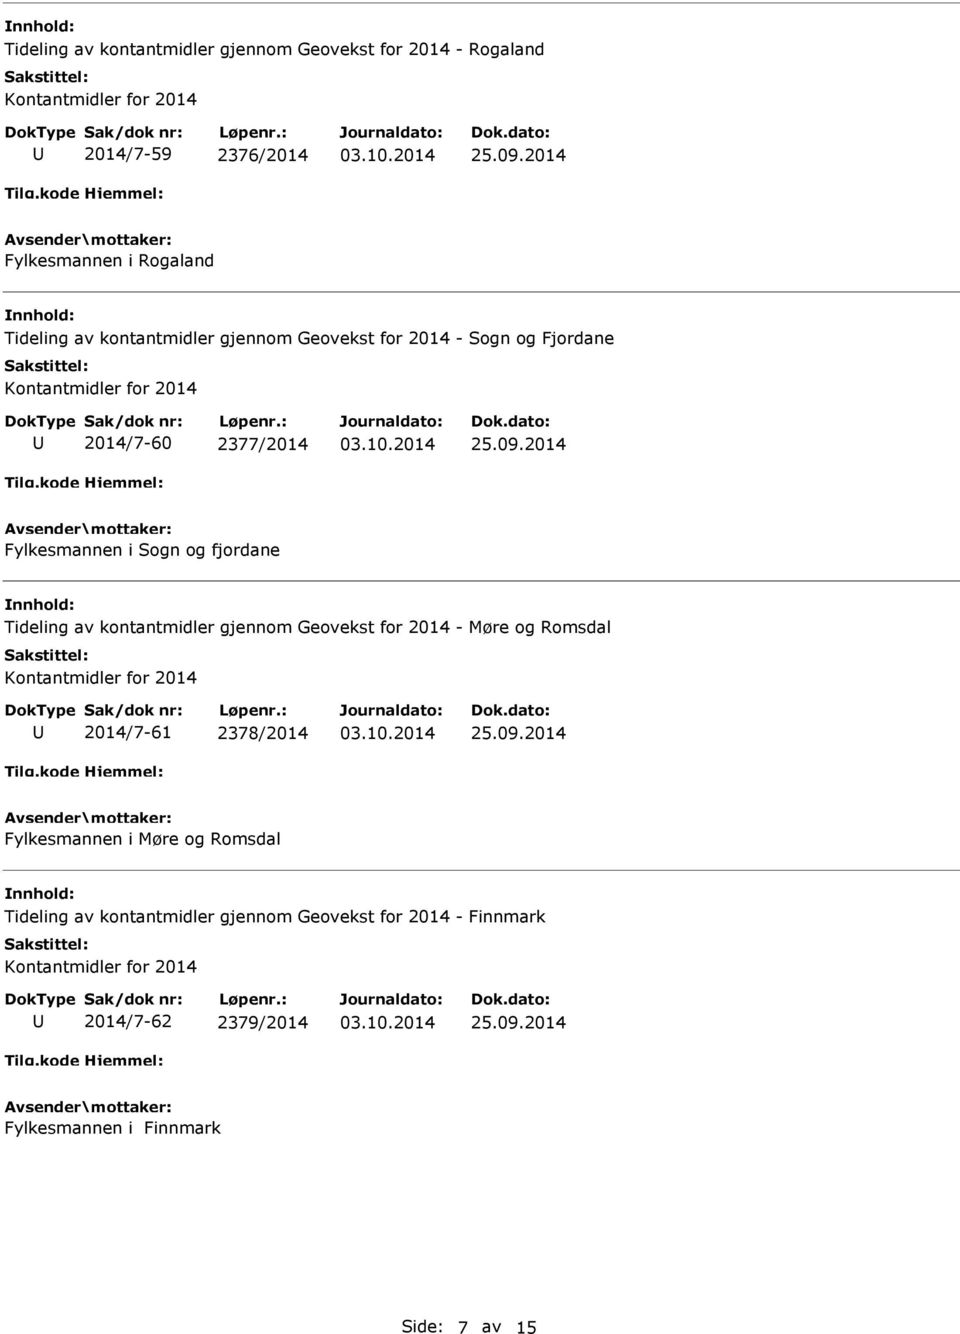 Tideling av kontantmidler gjennom Geovekst for 2014 - Møre og Romsdal 2014/7-61 2378/2014 Fylkesmannen i Møre og